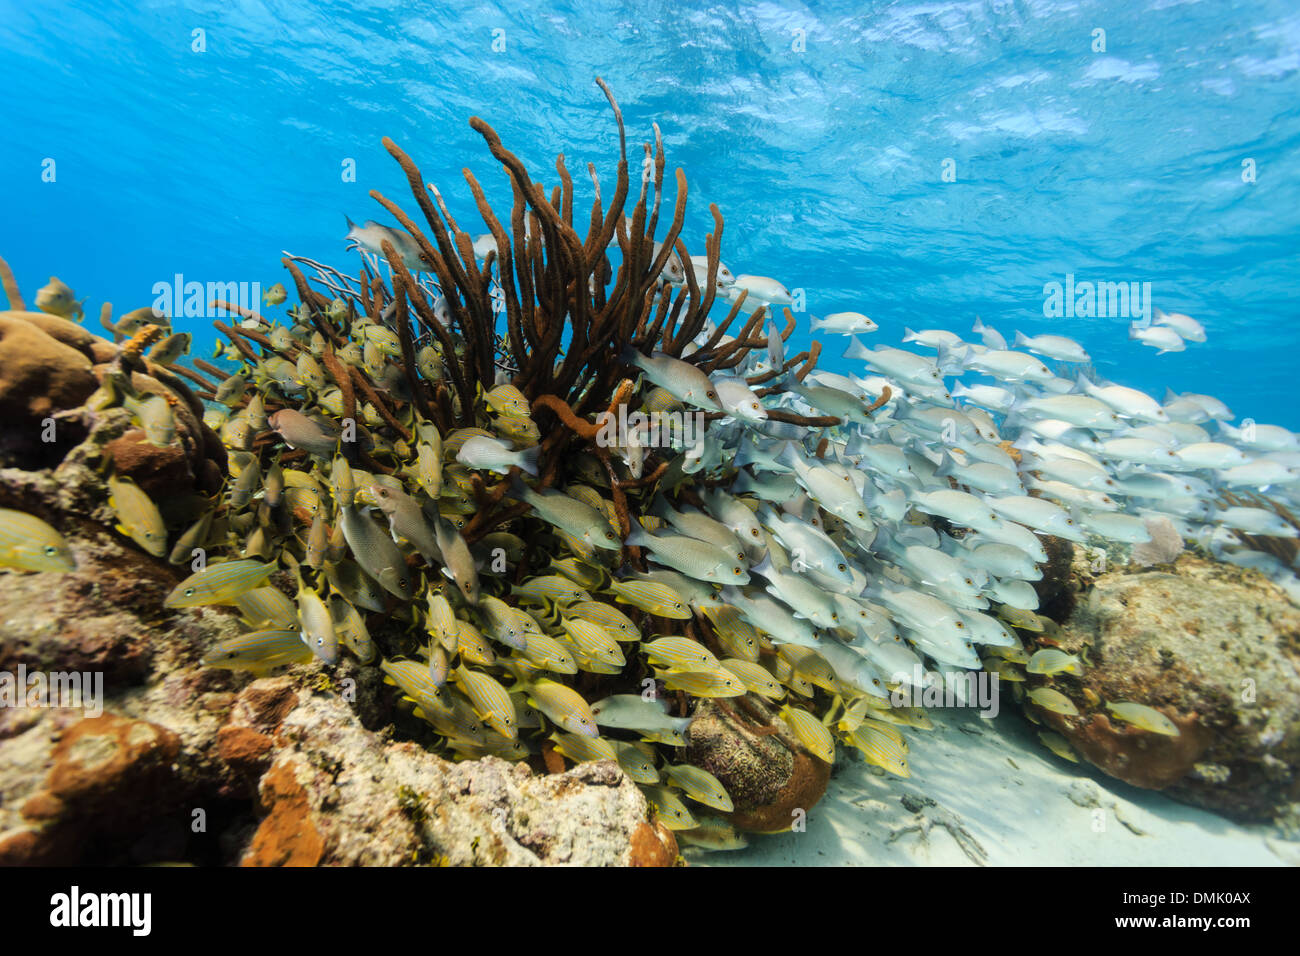 Scuole di pesci colorati di nuotare sulla barriera corallina in hol chan riserva marina Foto Stock